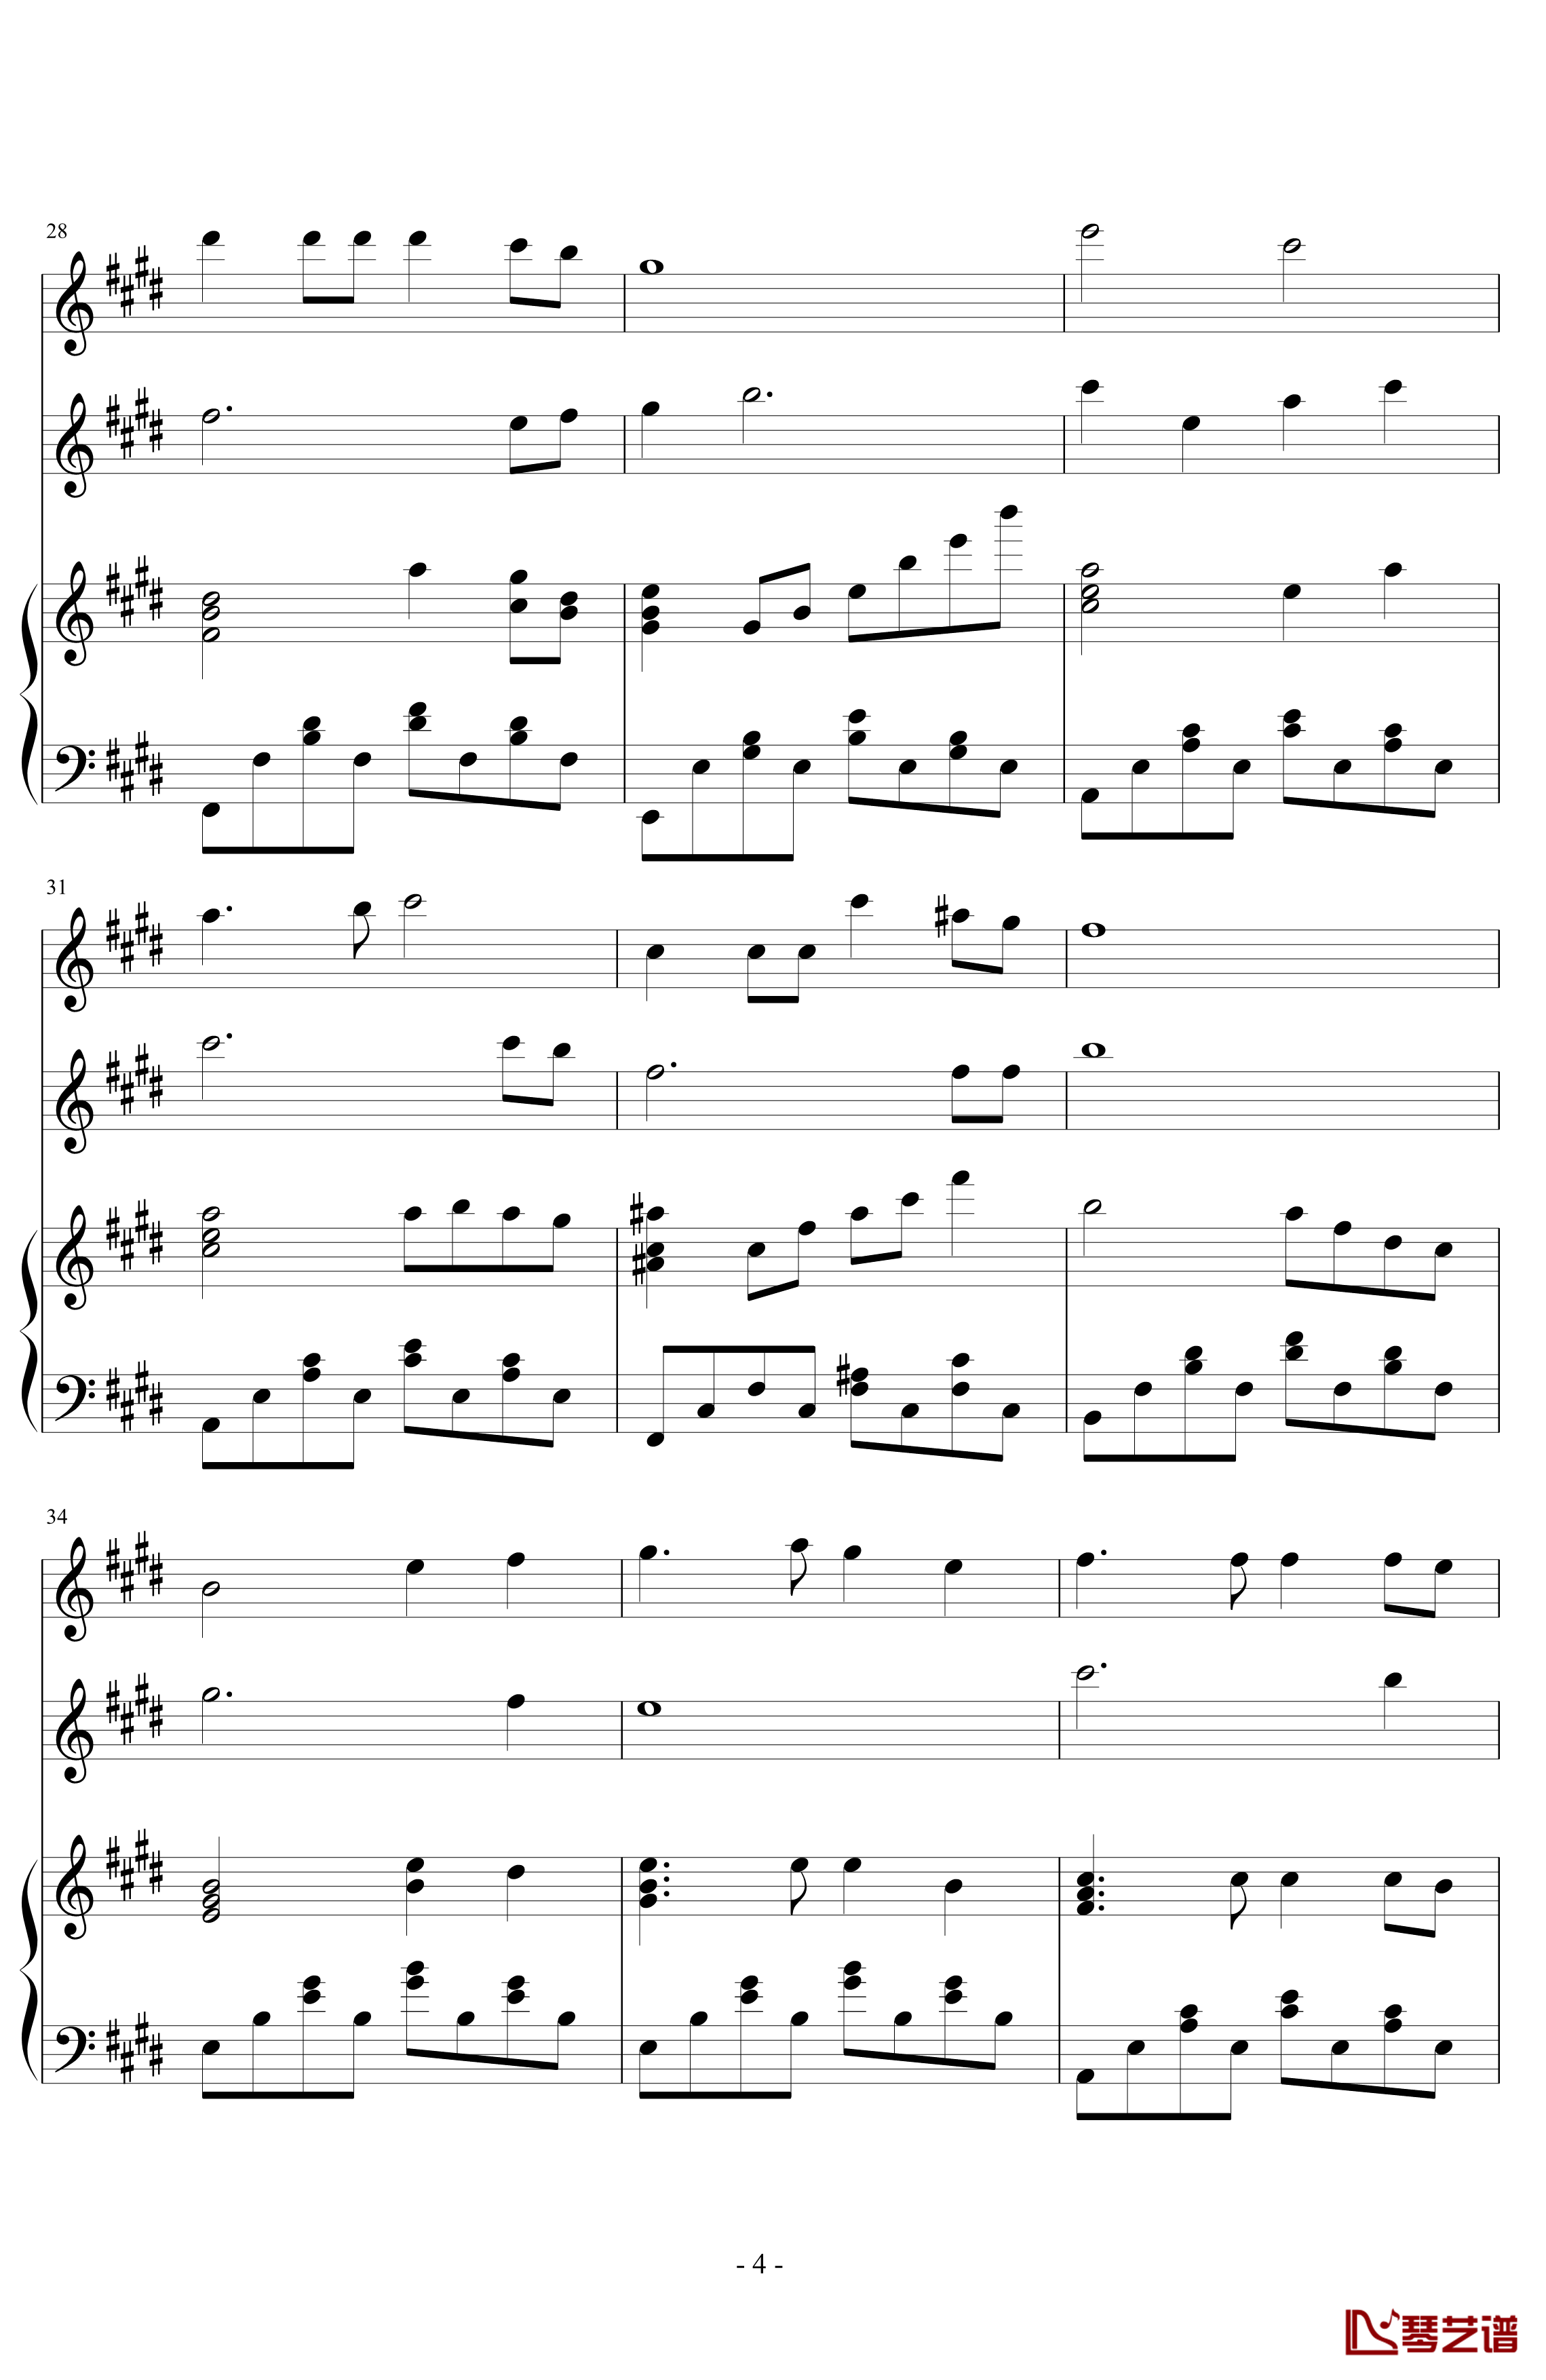 同一首歌钢琴谱-小型伴奏谱兼演奏谱-毛阿敏4